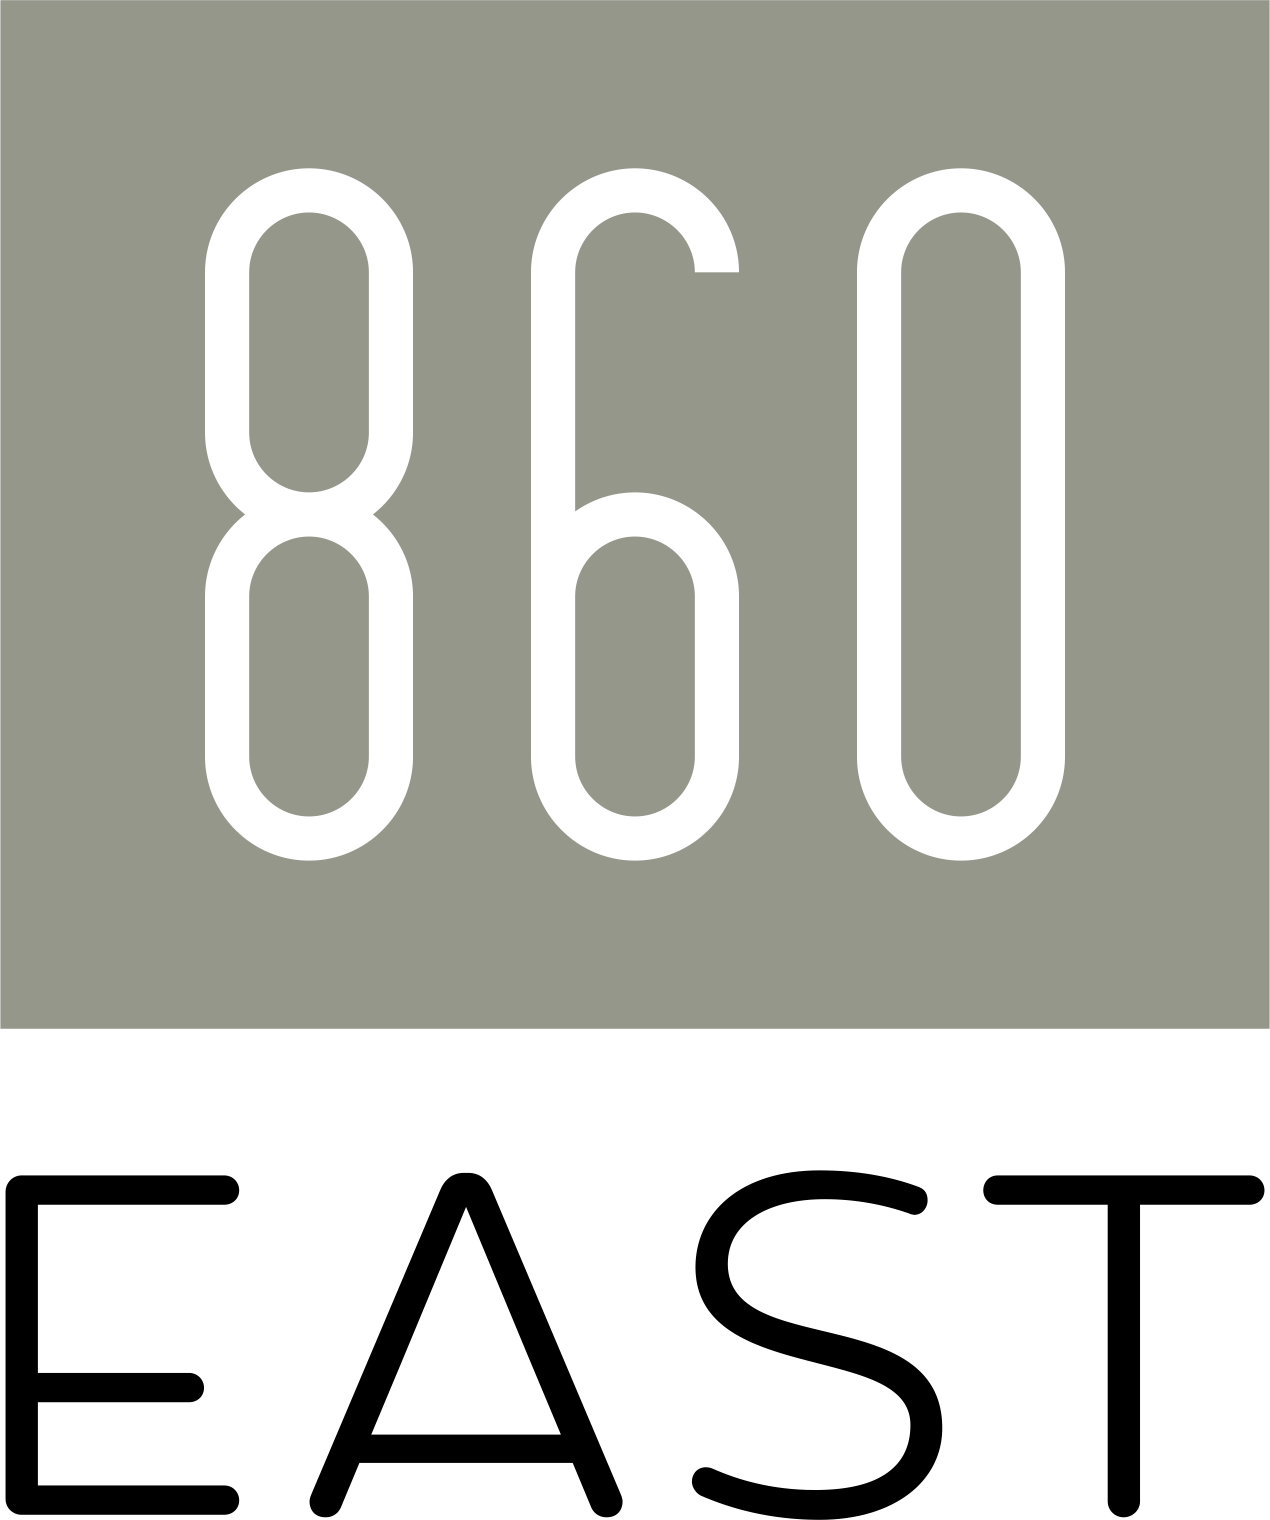 860 East Logo - Header - Click to go home